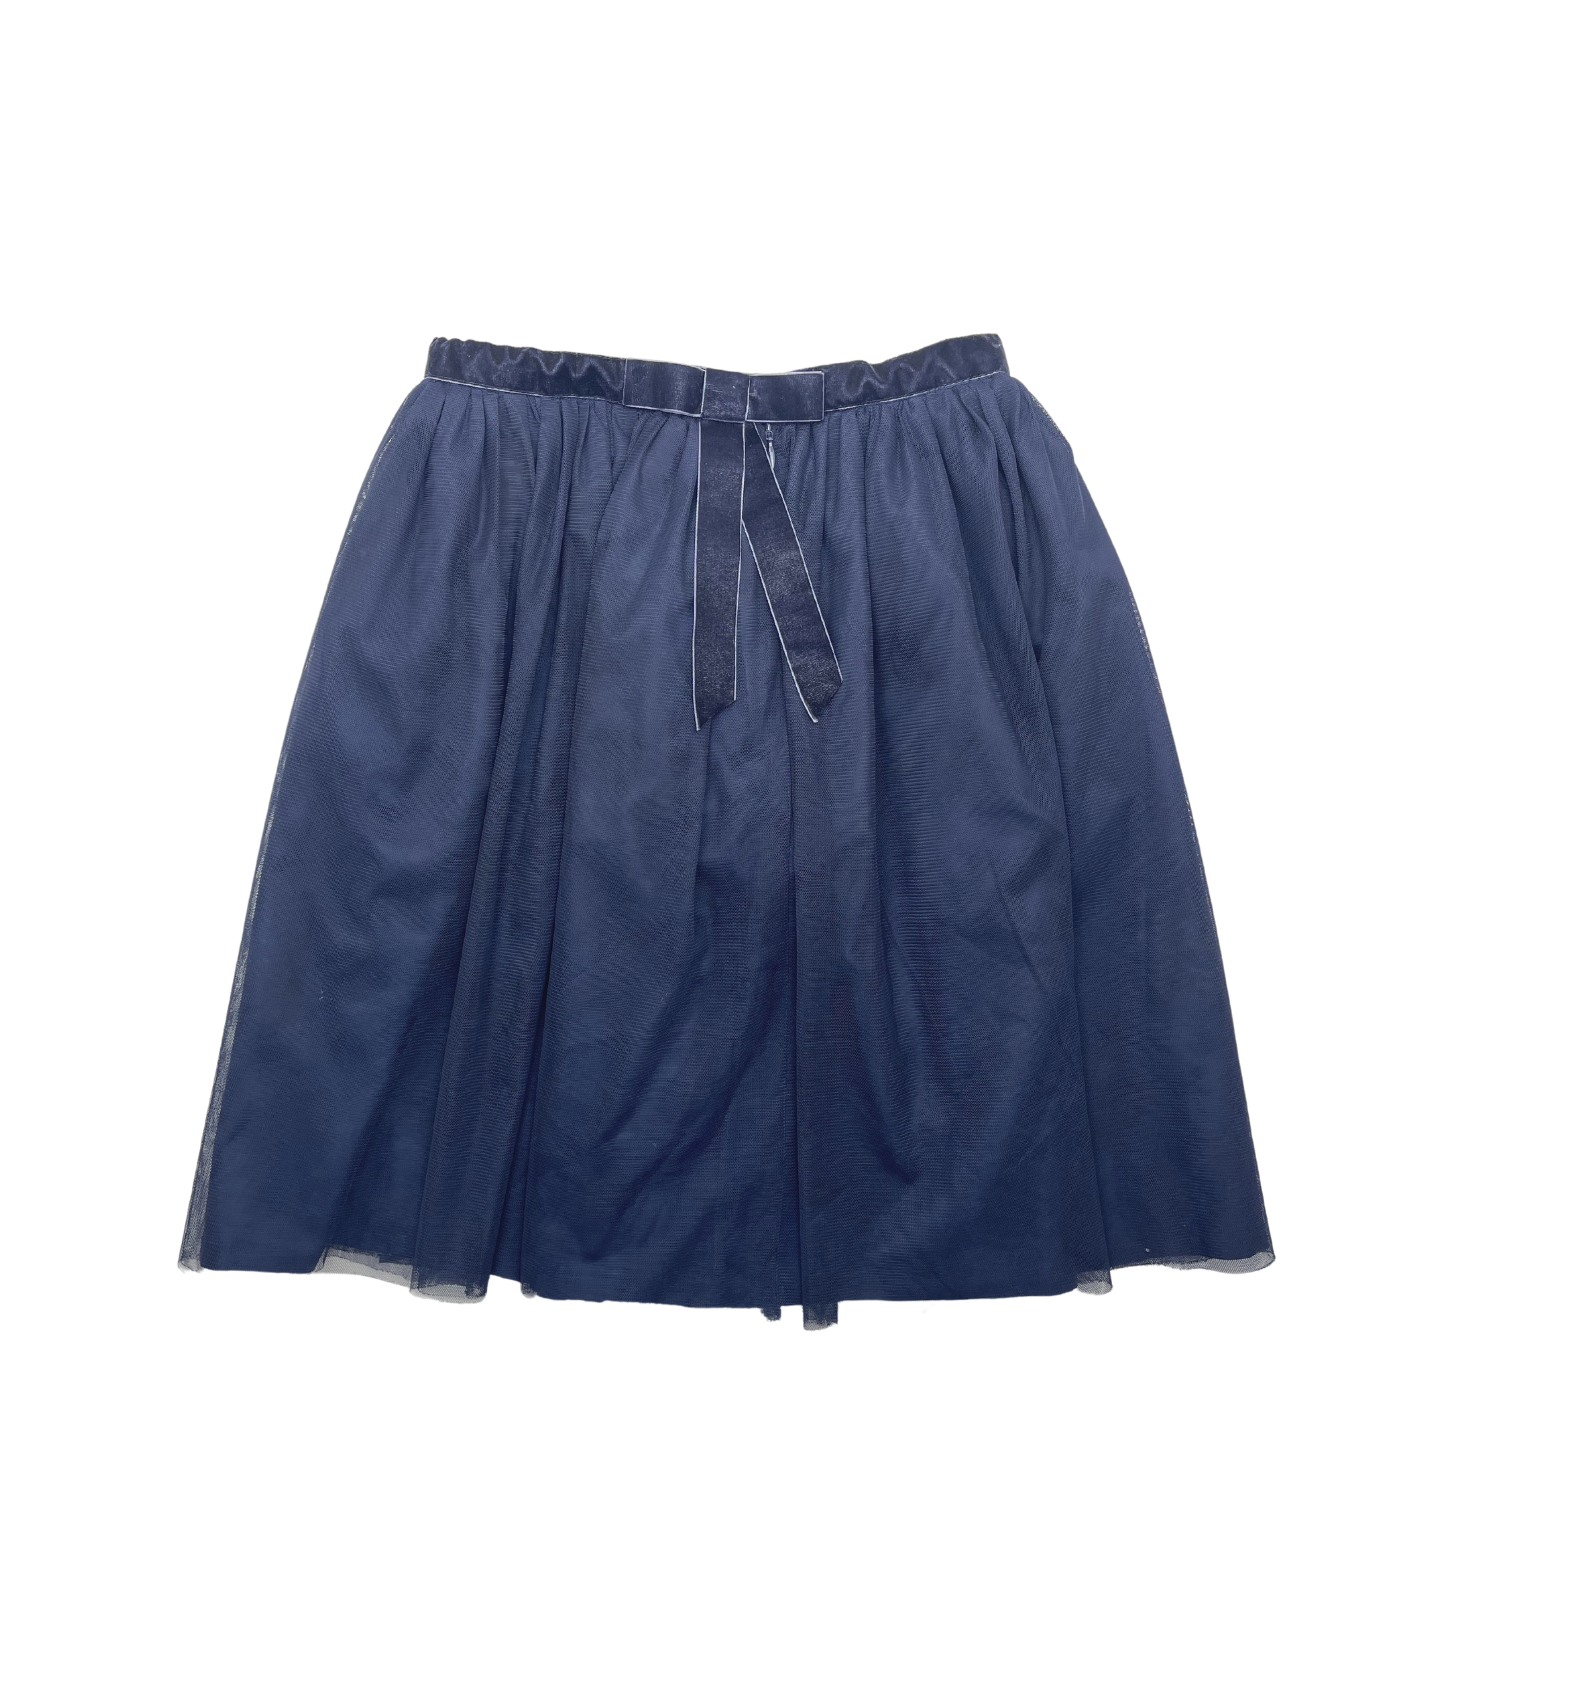 JACADI - Navy tulle skirt - 12 years old